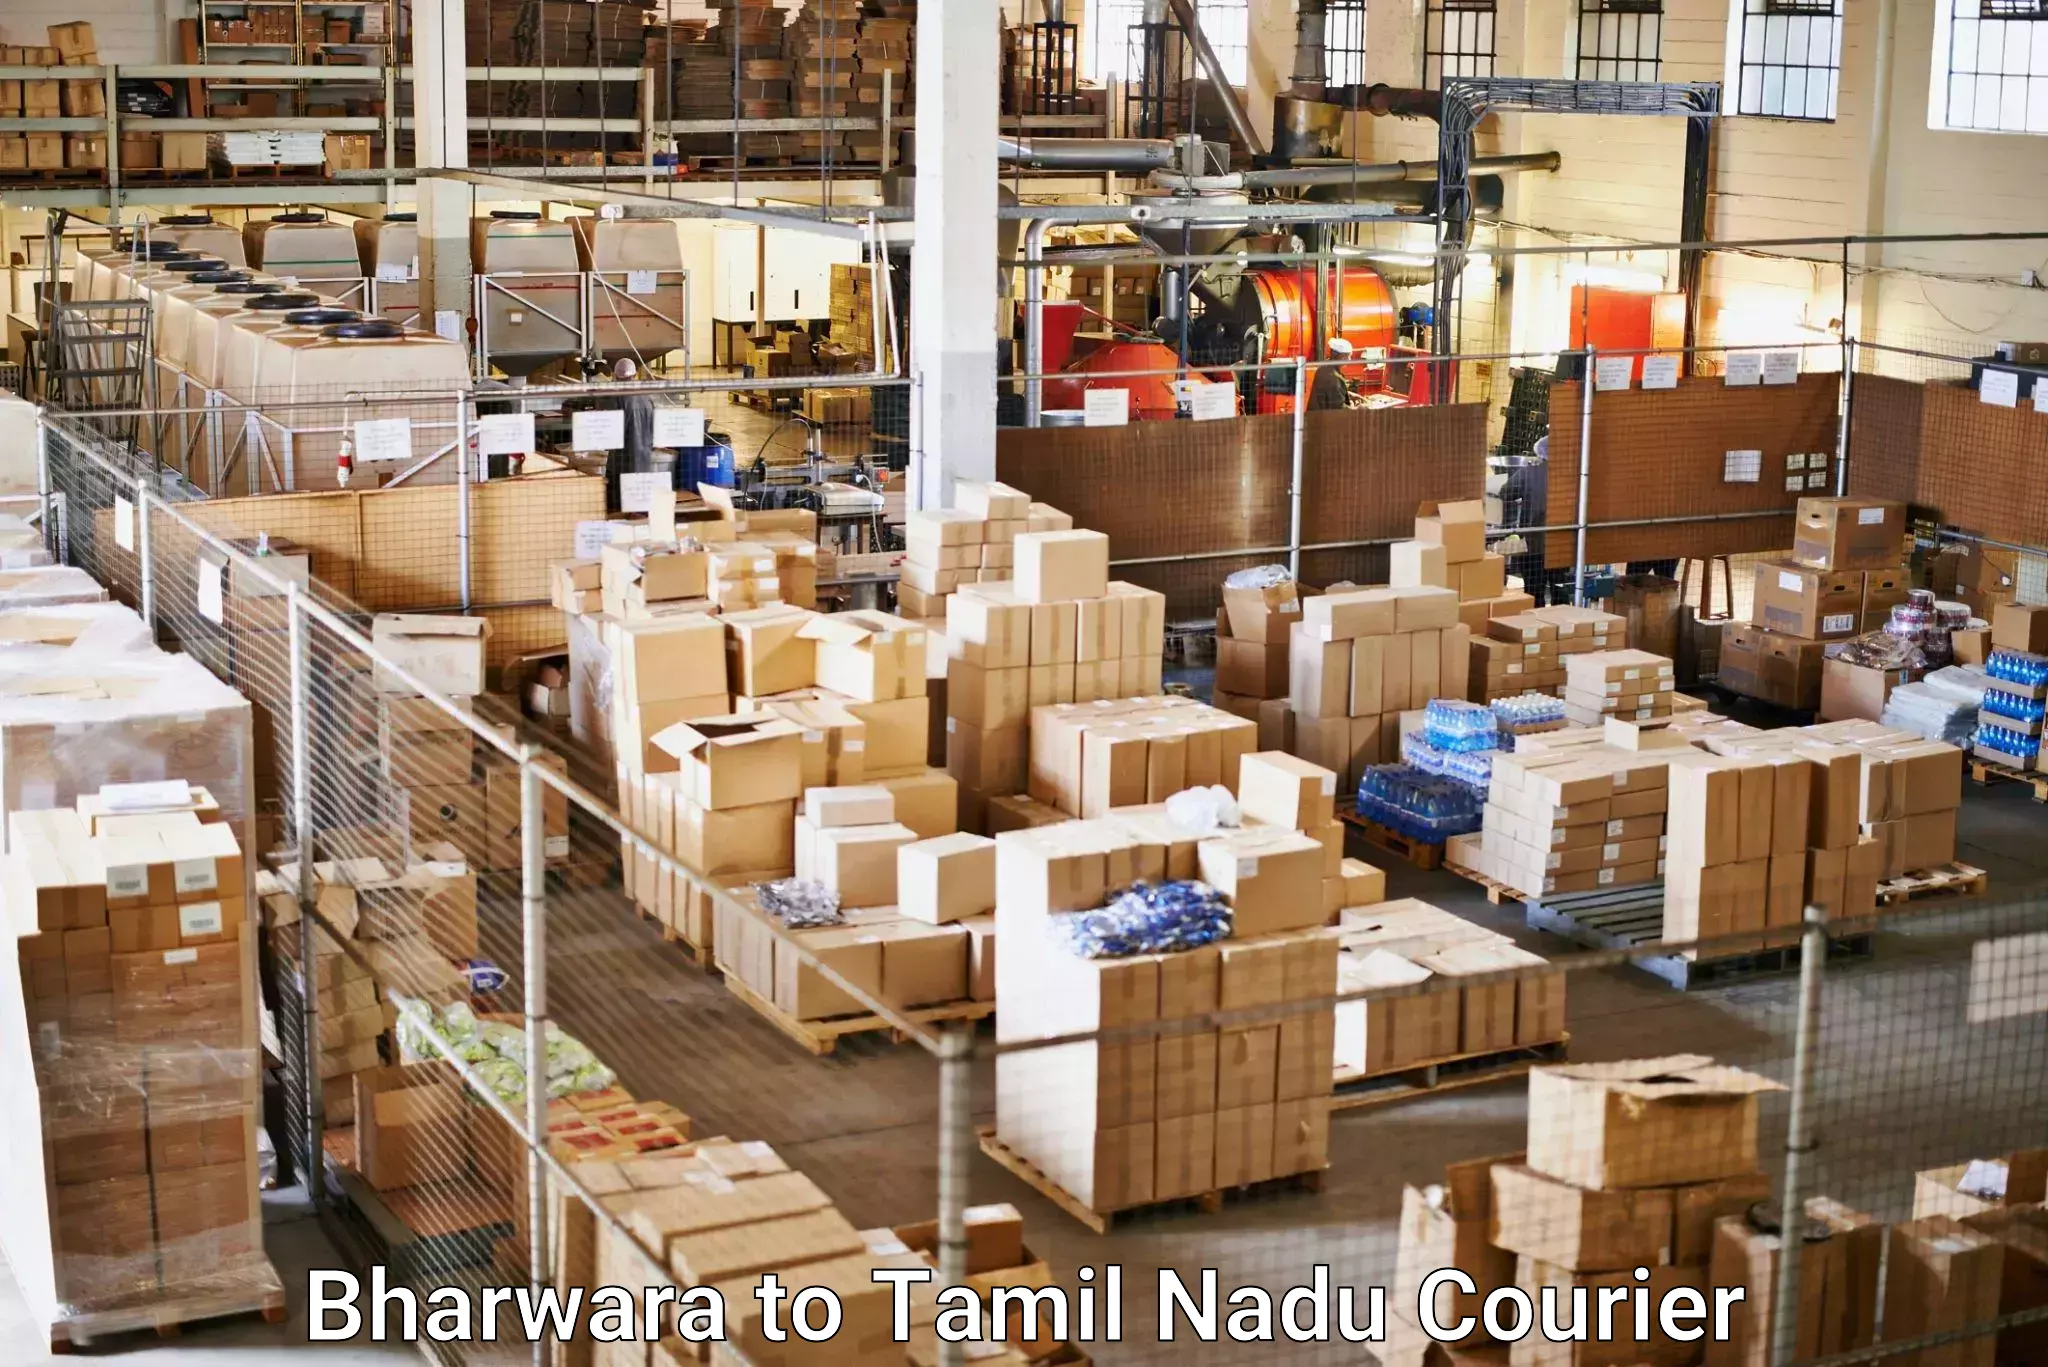 Online package tracking Bharwara to Coimbatore